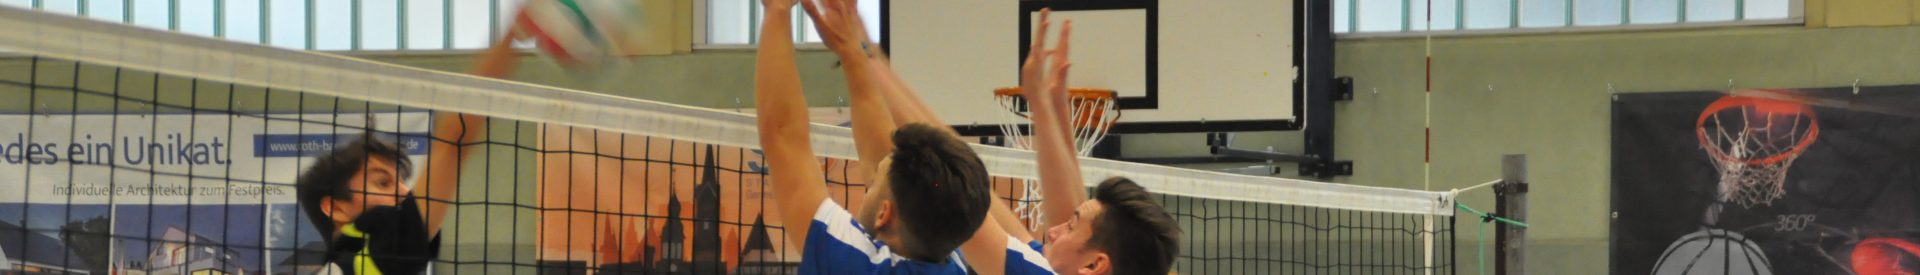 Neue Trainingszeiten der Germersheimer Volleyballer